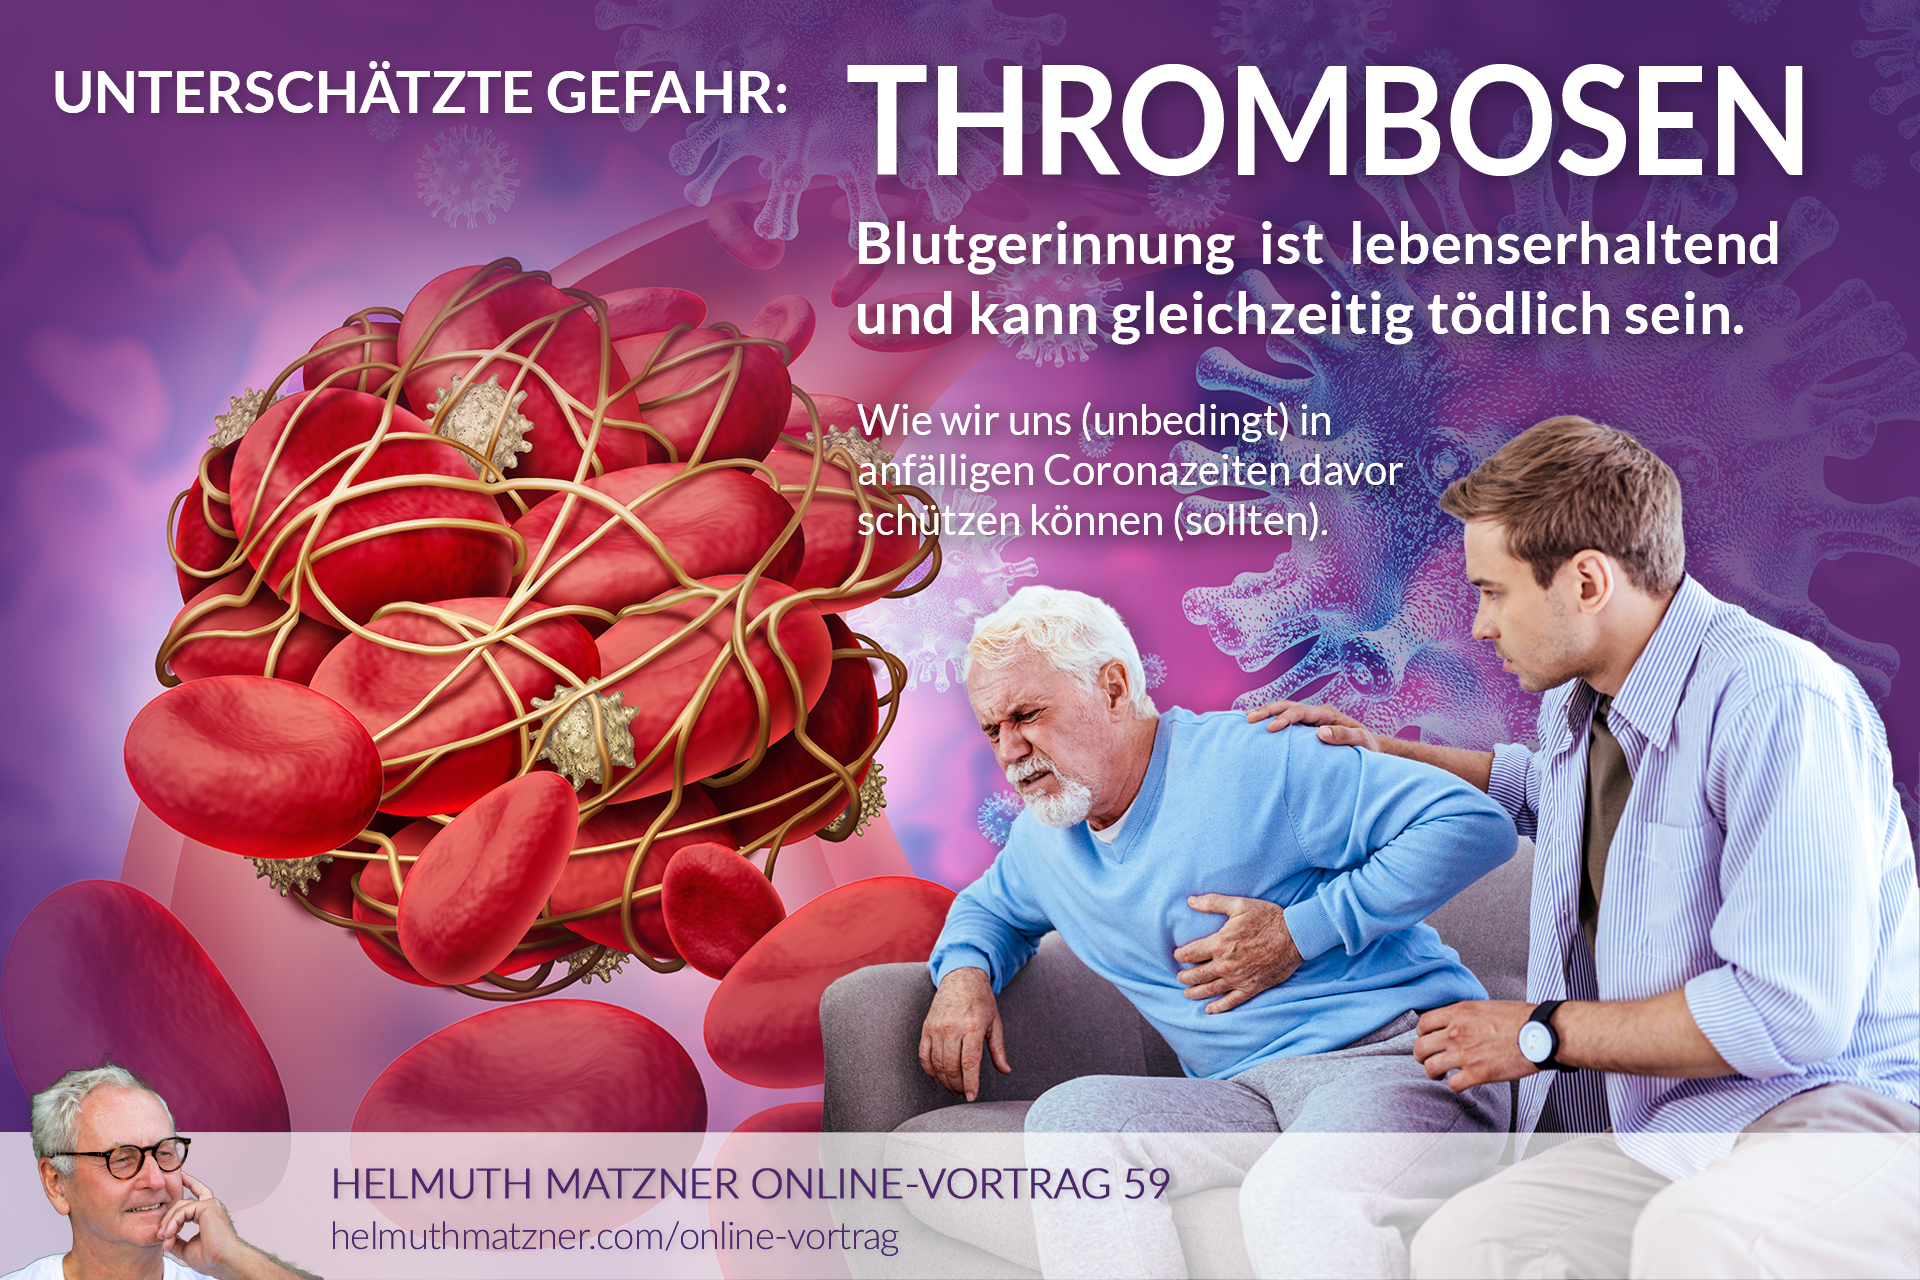 Helmuth Matzner - Online-Vortrag 59 - Thrombosen - Blutgerinnung - ARCHIV v05